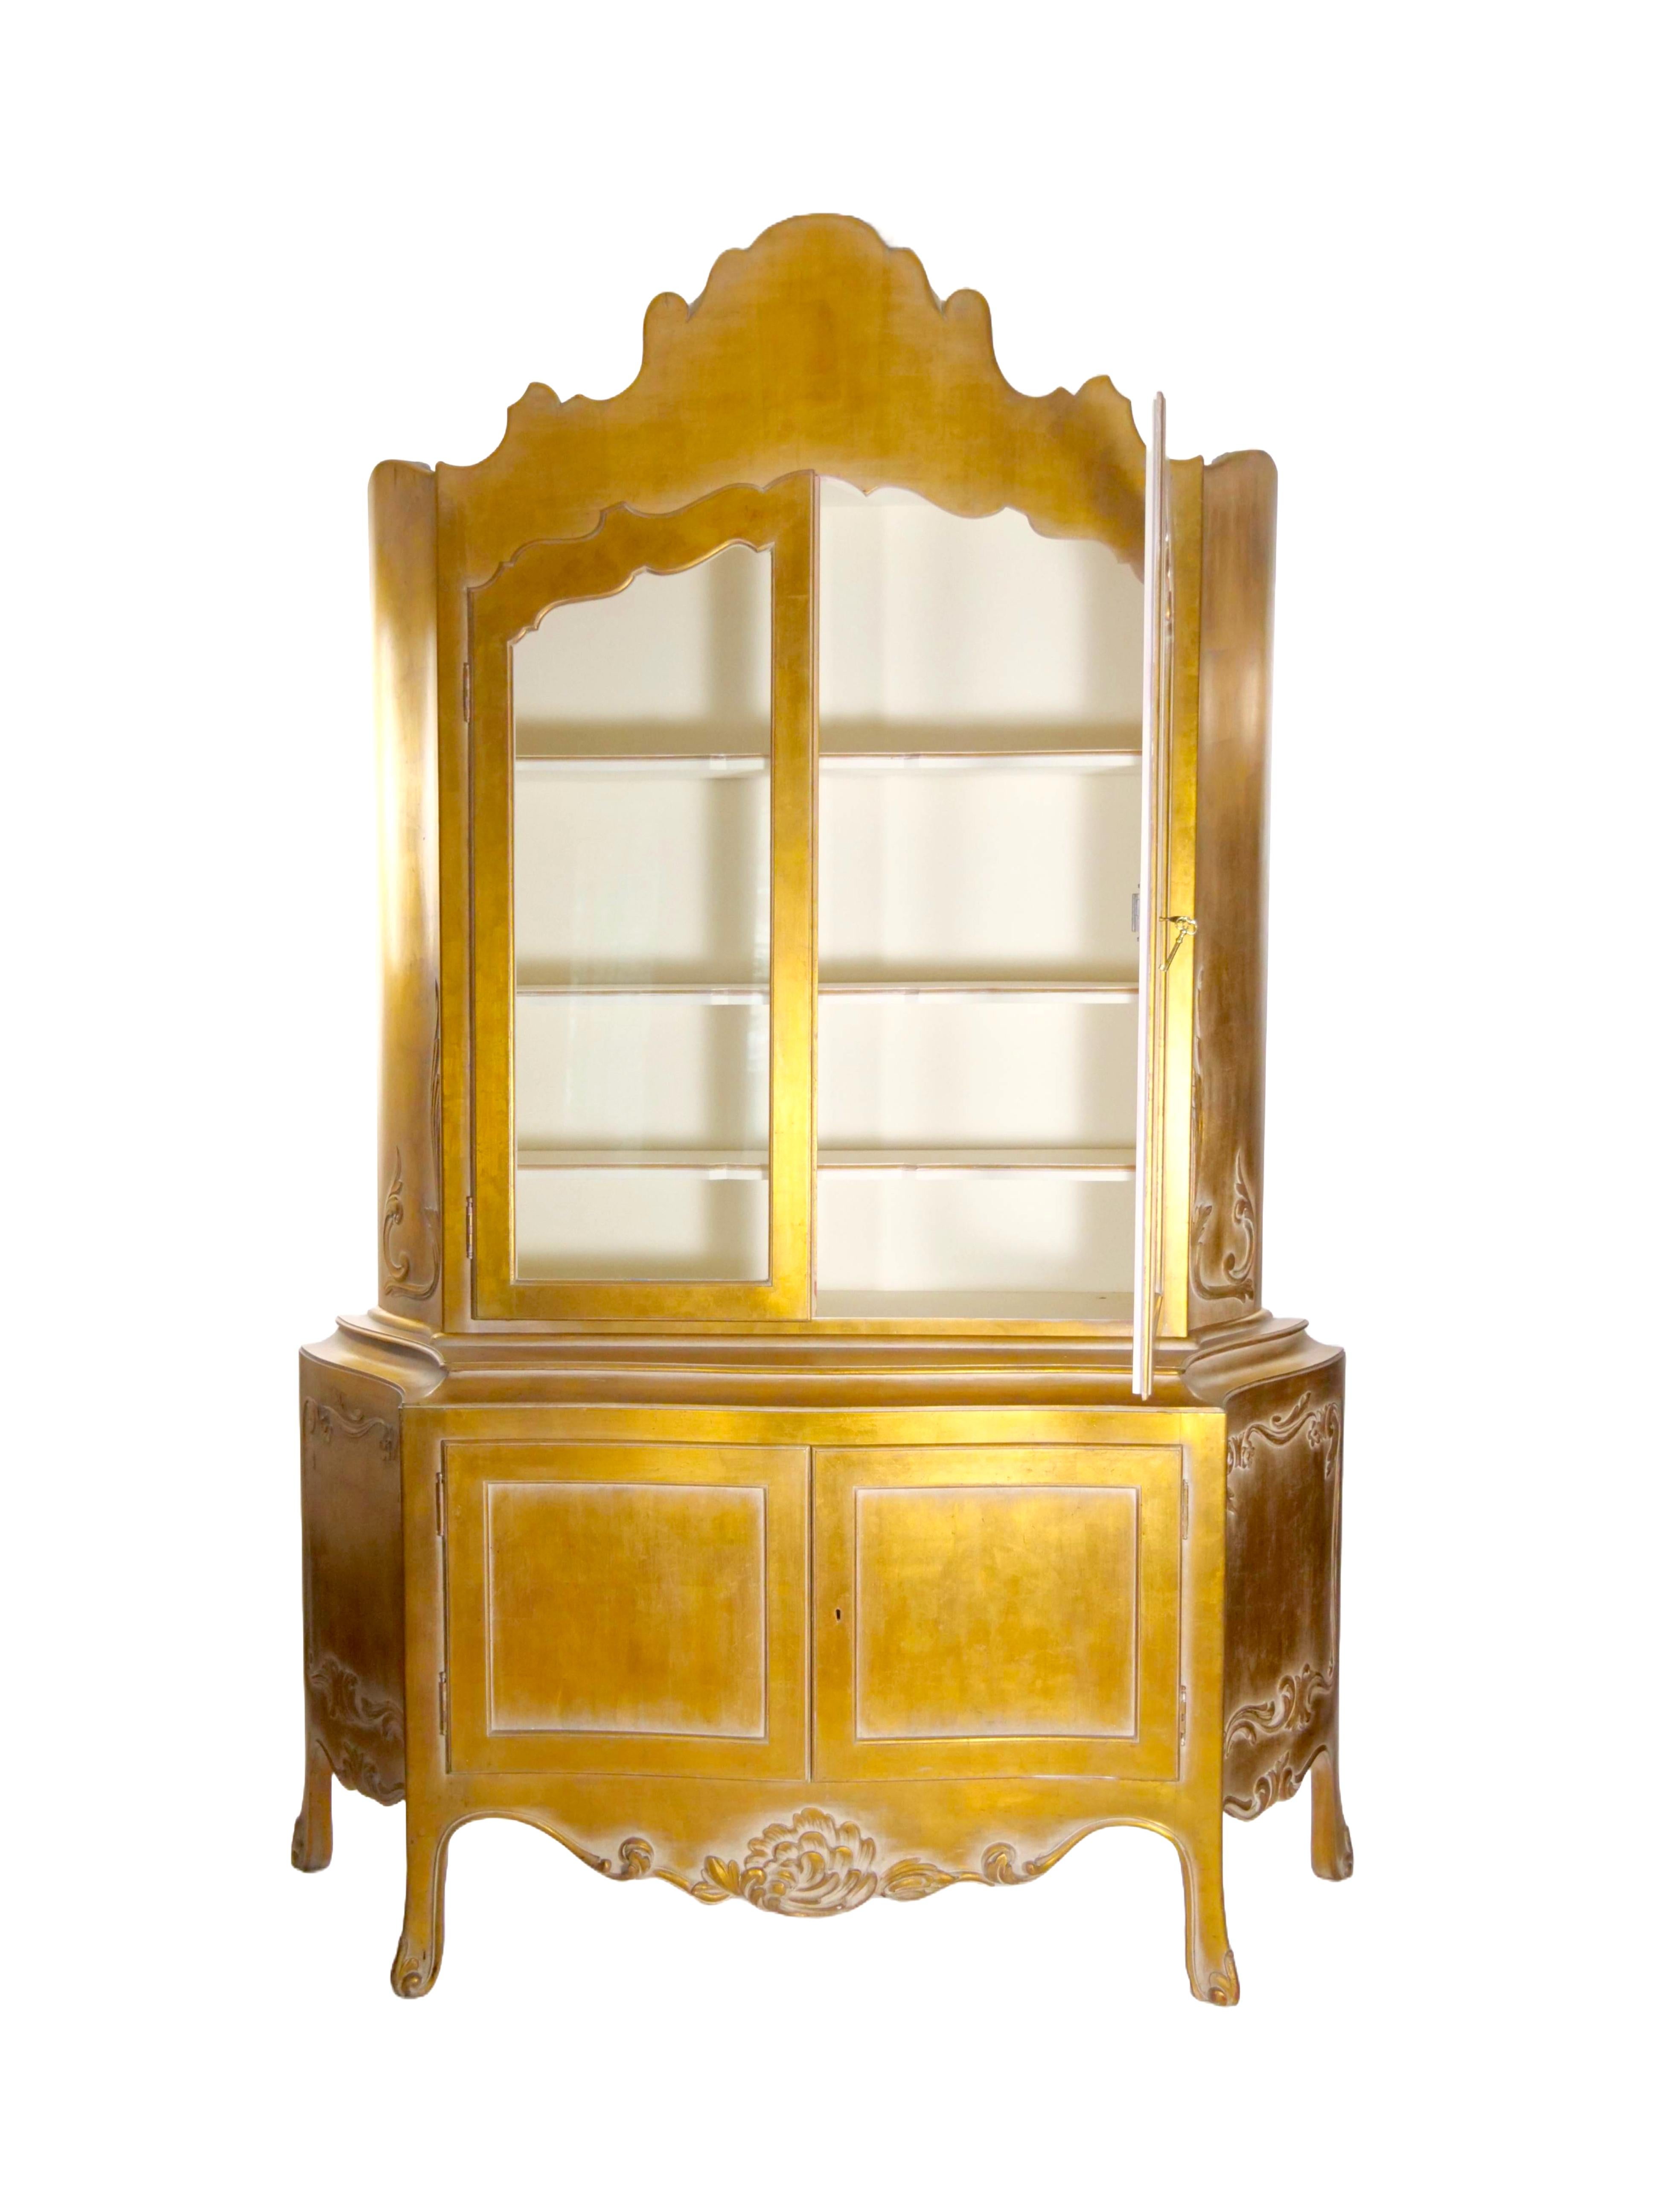 Erhöhen Sie Ihren Wohnbereich mit unserem zweiteiligen, handgeschnitzten, vergoldeten Holzschrank aus der Mitte des 20. Jahrhunderts - ein wahres Zeugnis für Handwerkskunst und zeitloses Design. Dieses exquisite Kabinett zeigt aufwändig geschnitzte